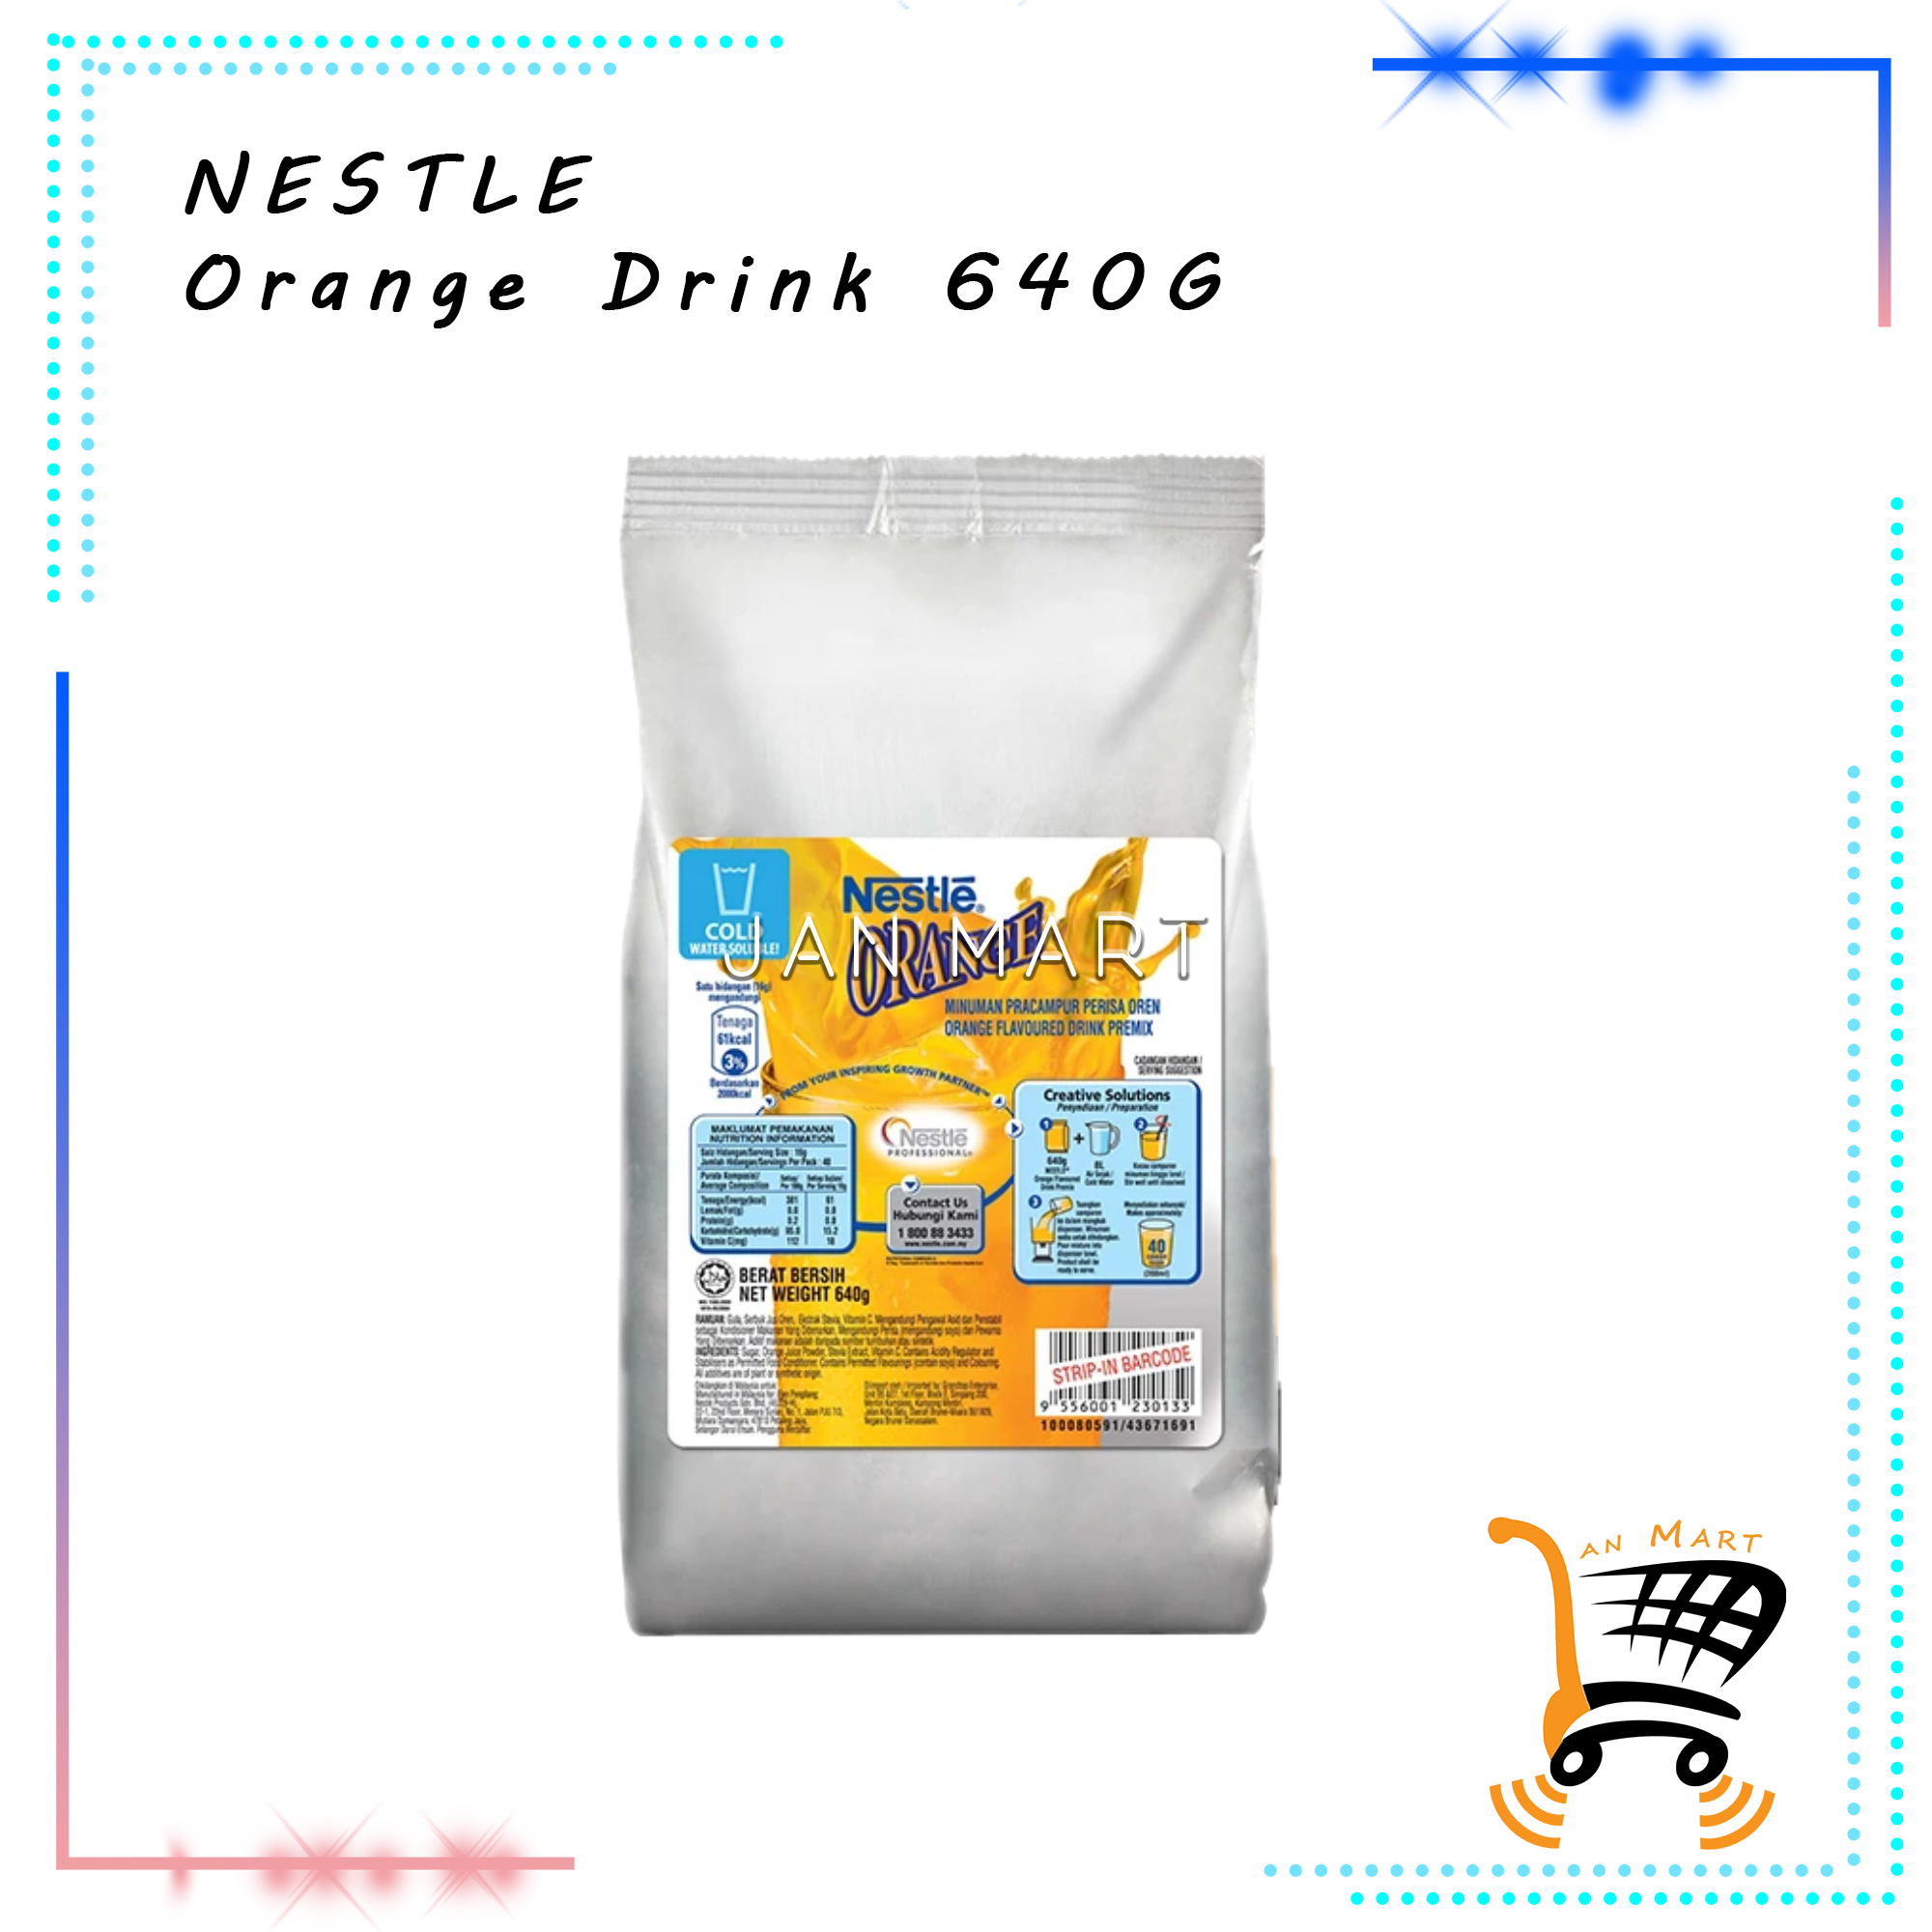 NESTLE Orange Drink 640G